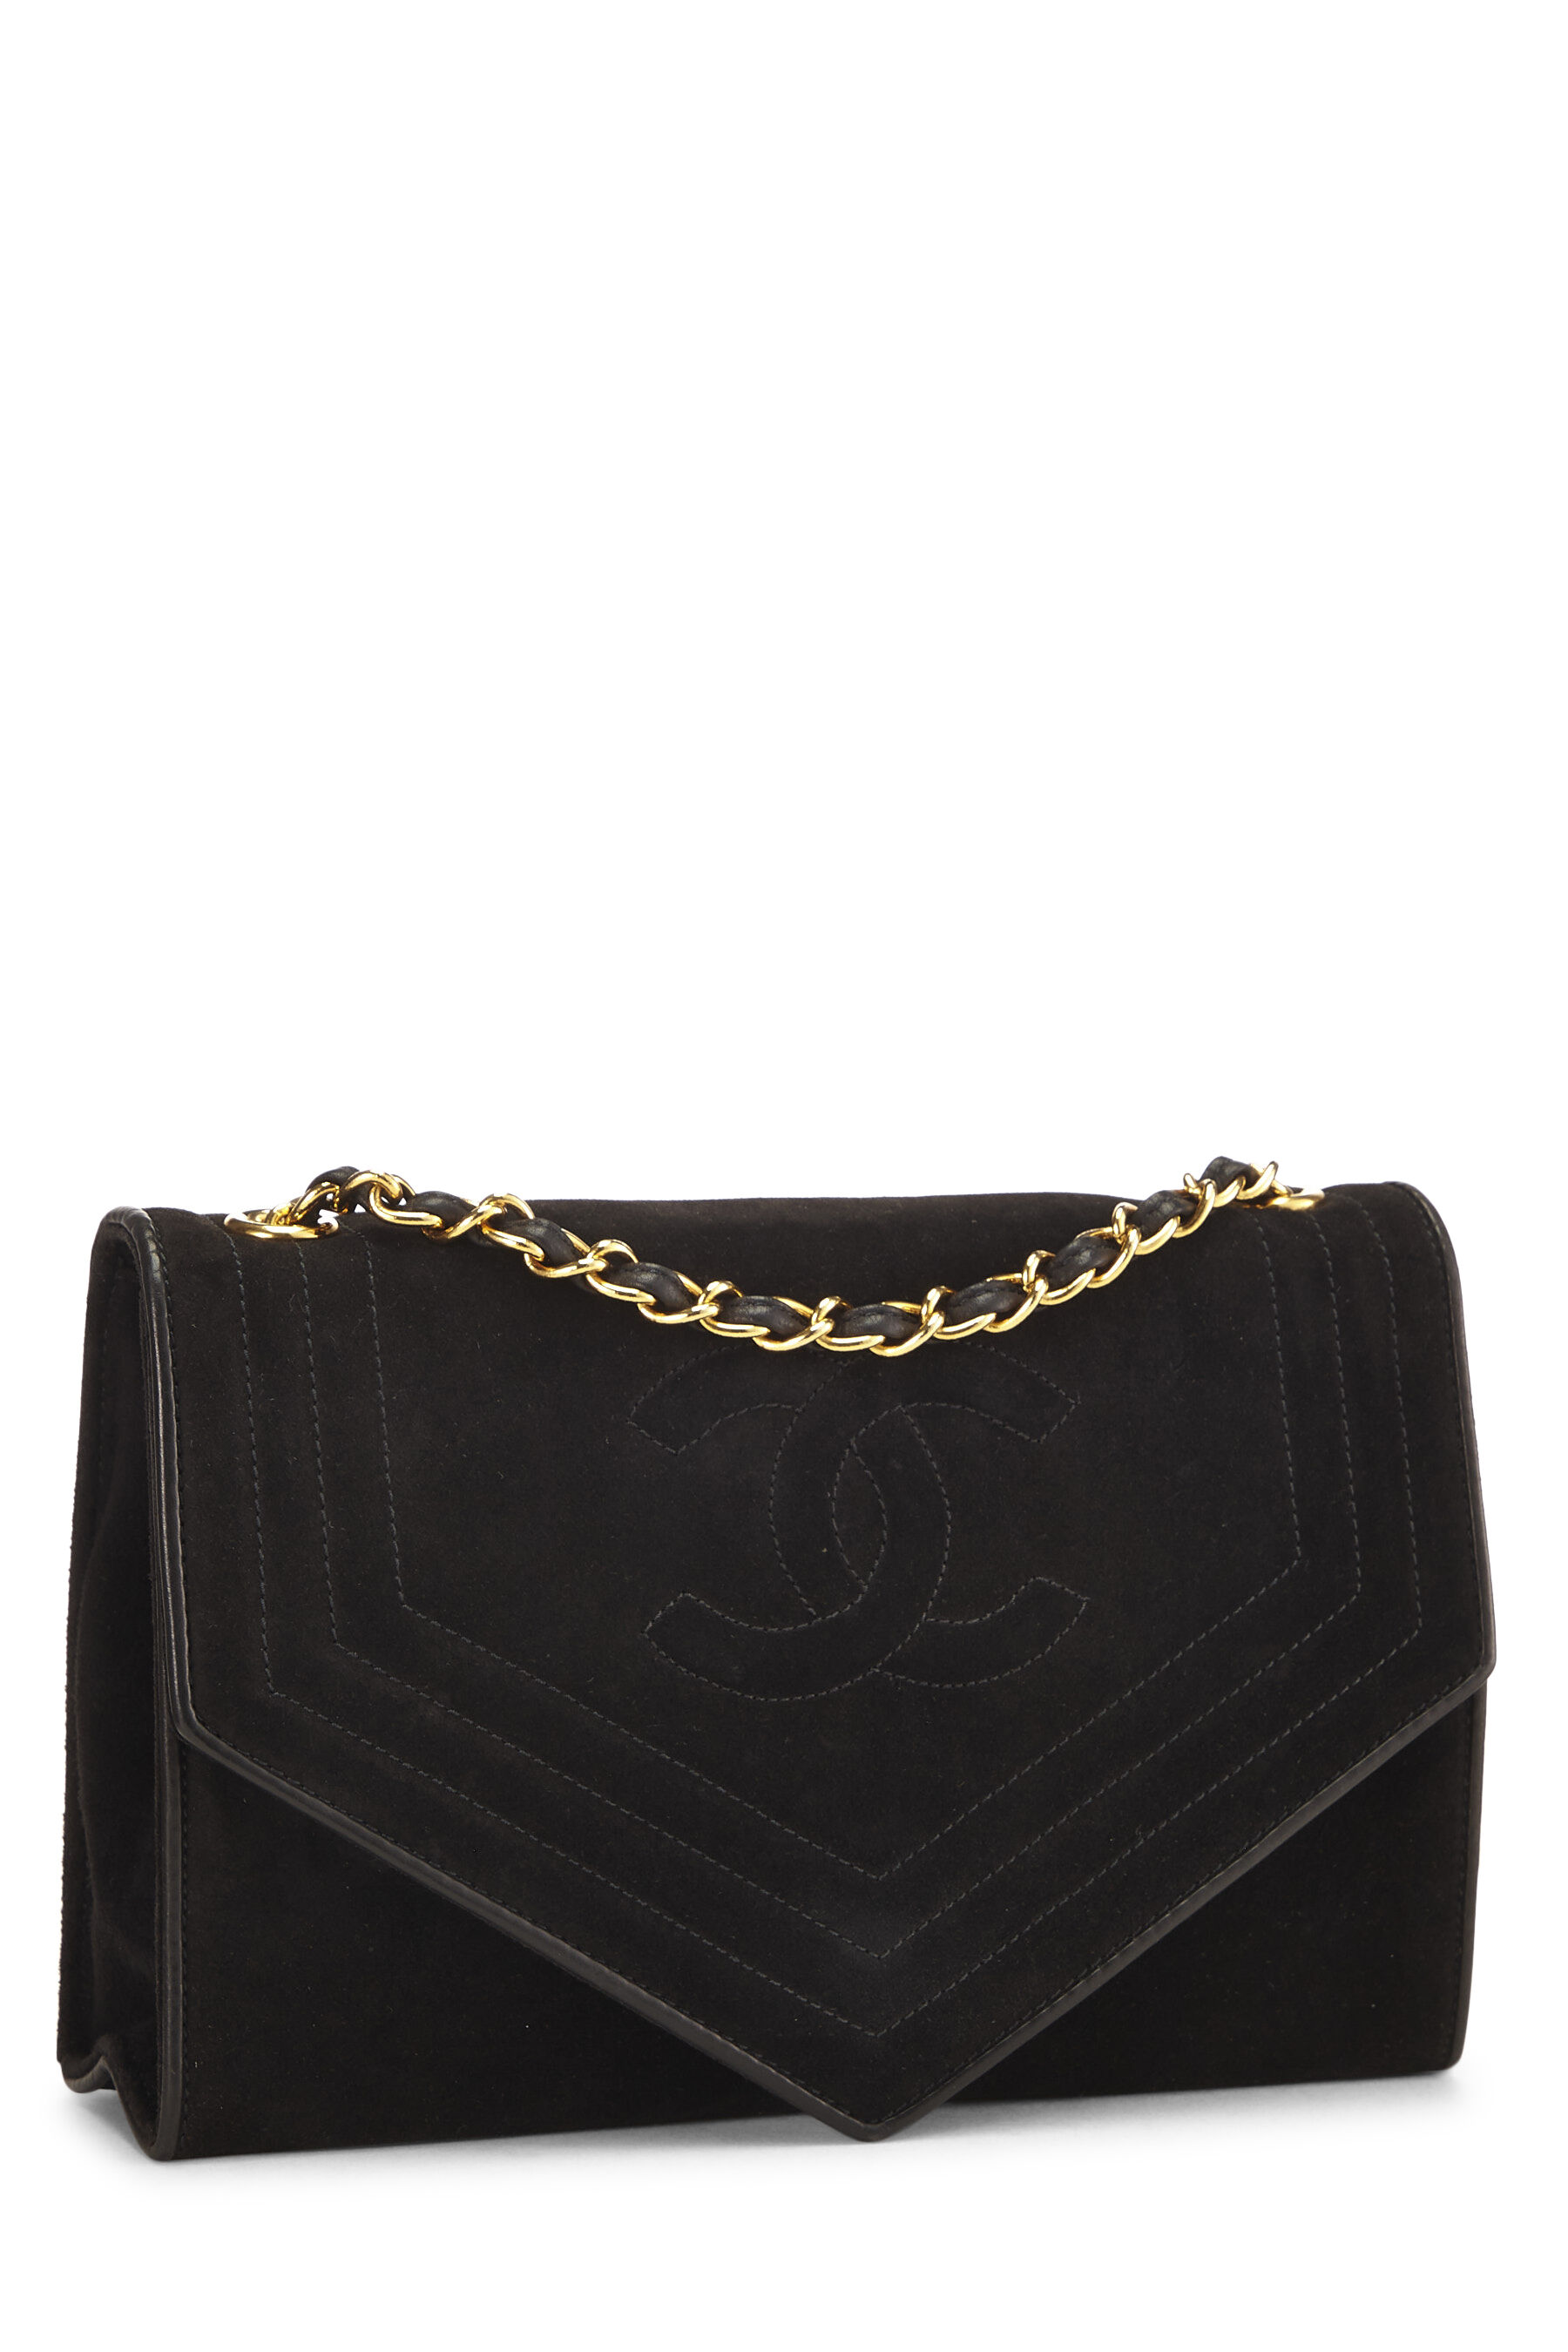 Chanel - Black Suede Triborder Envelope Flap Shoulder Bag Small